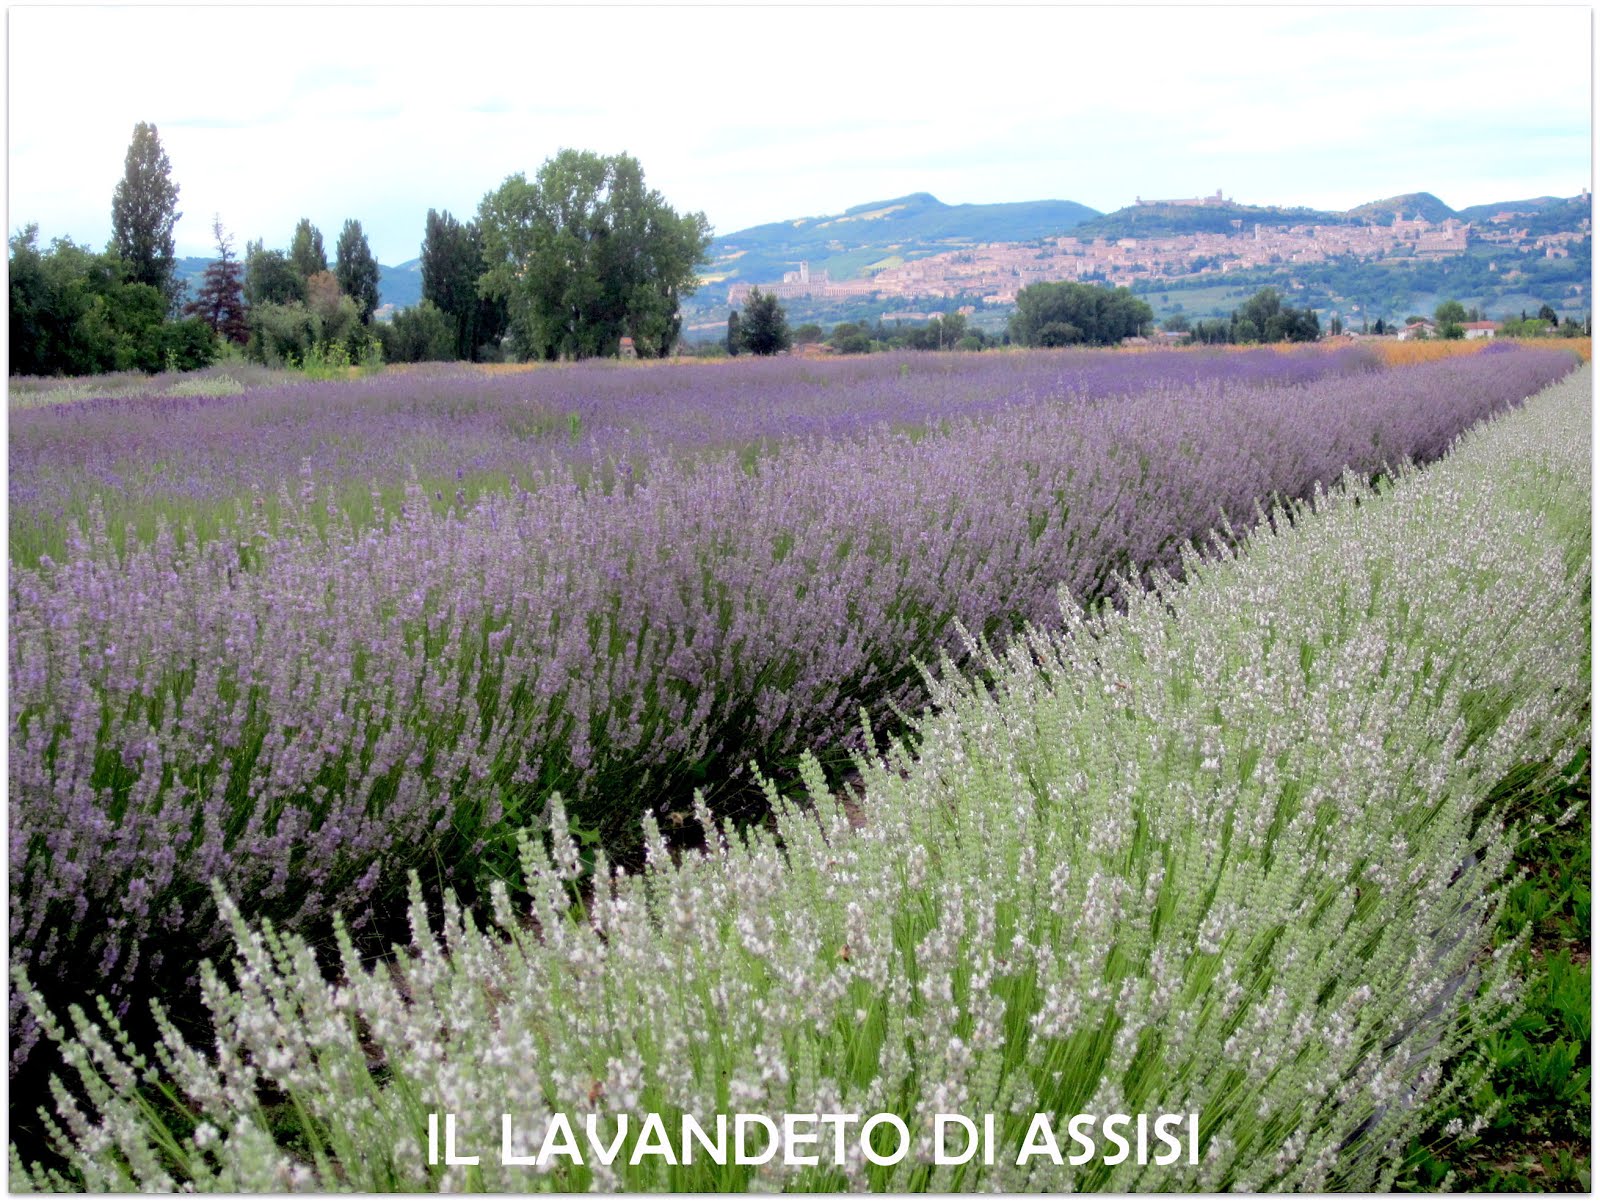 Vista Assisi e del lavandeto vai al sito ufficiale www.illavandeto.com